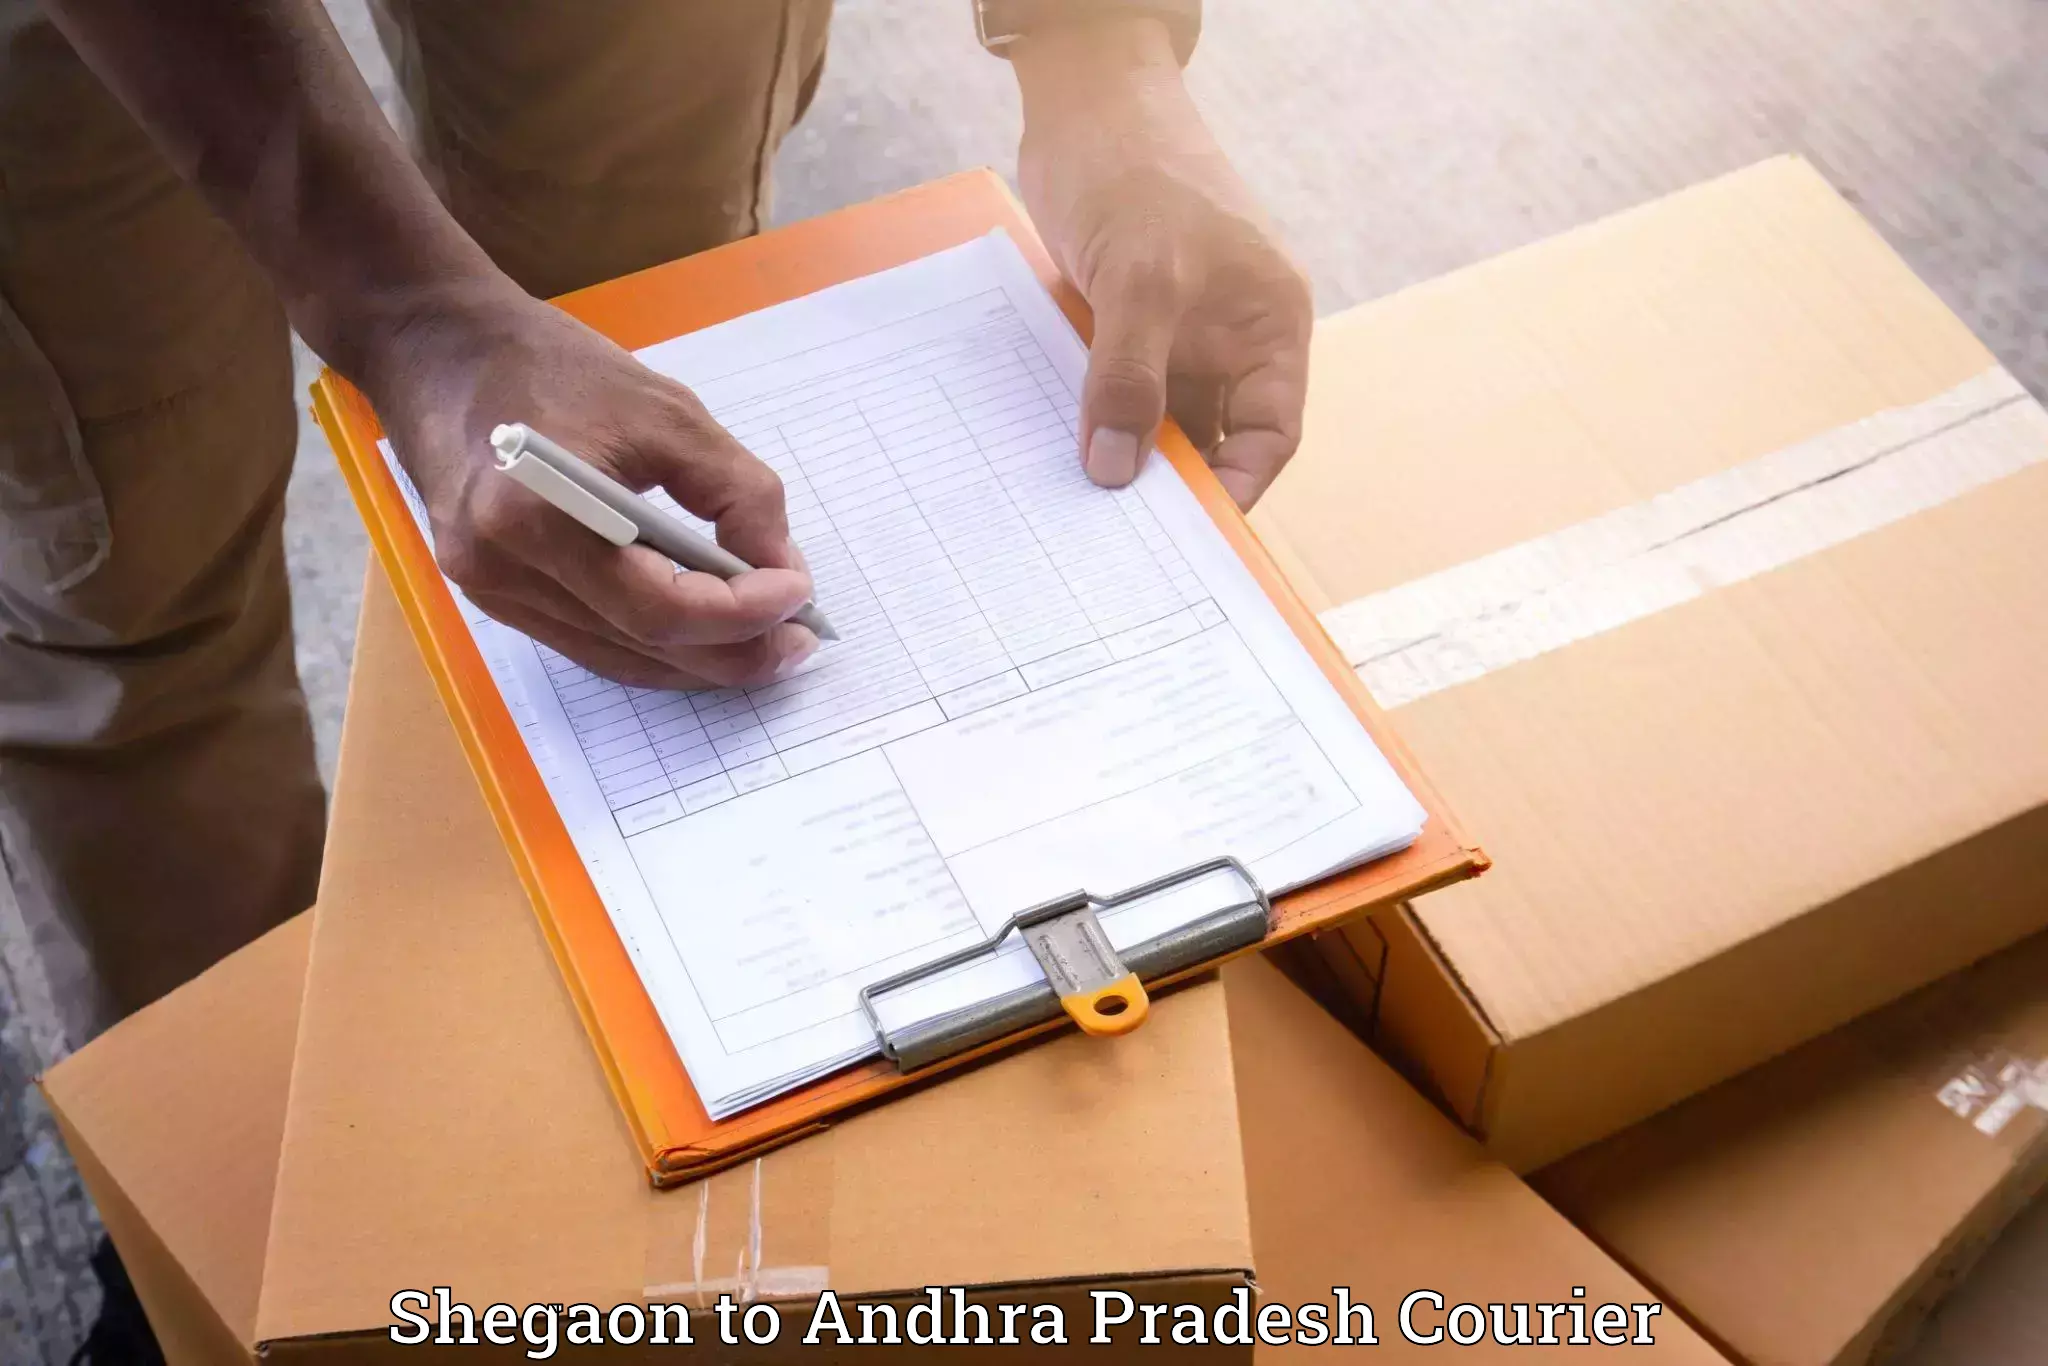 Trusted moving company Shegaon to Veldurthi